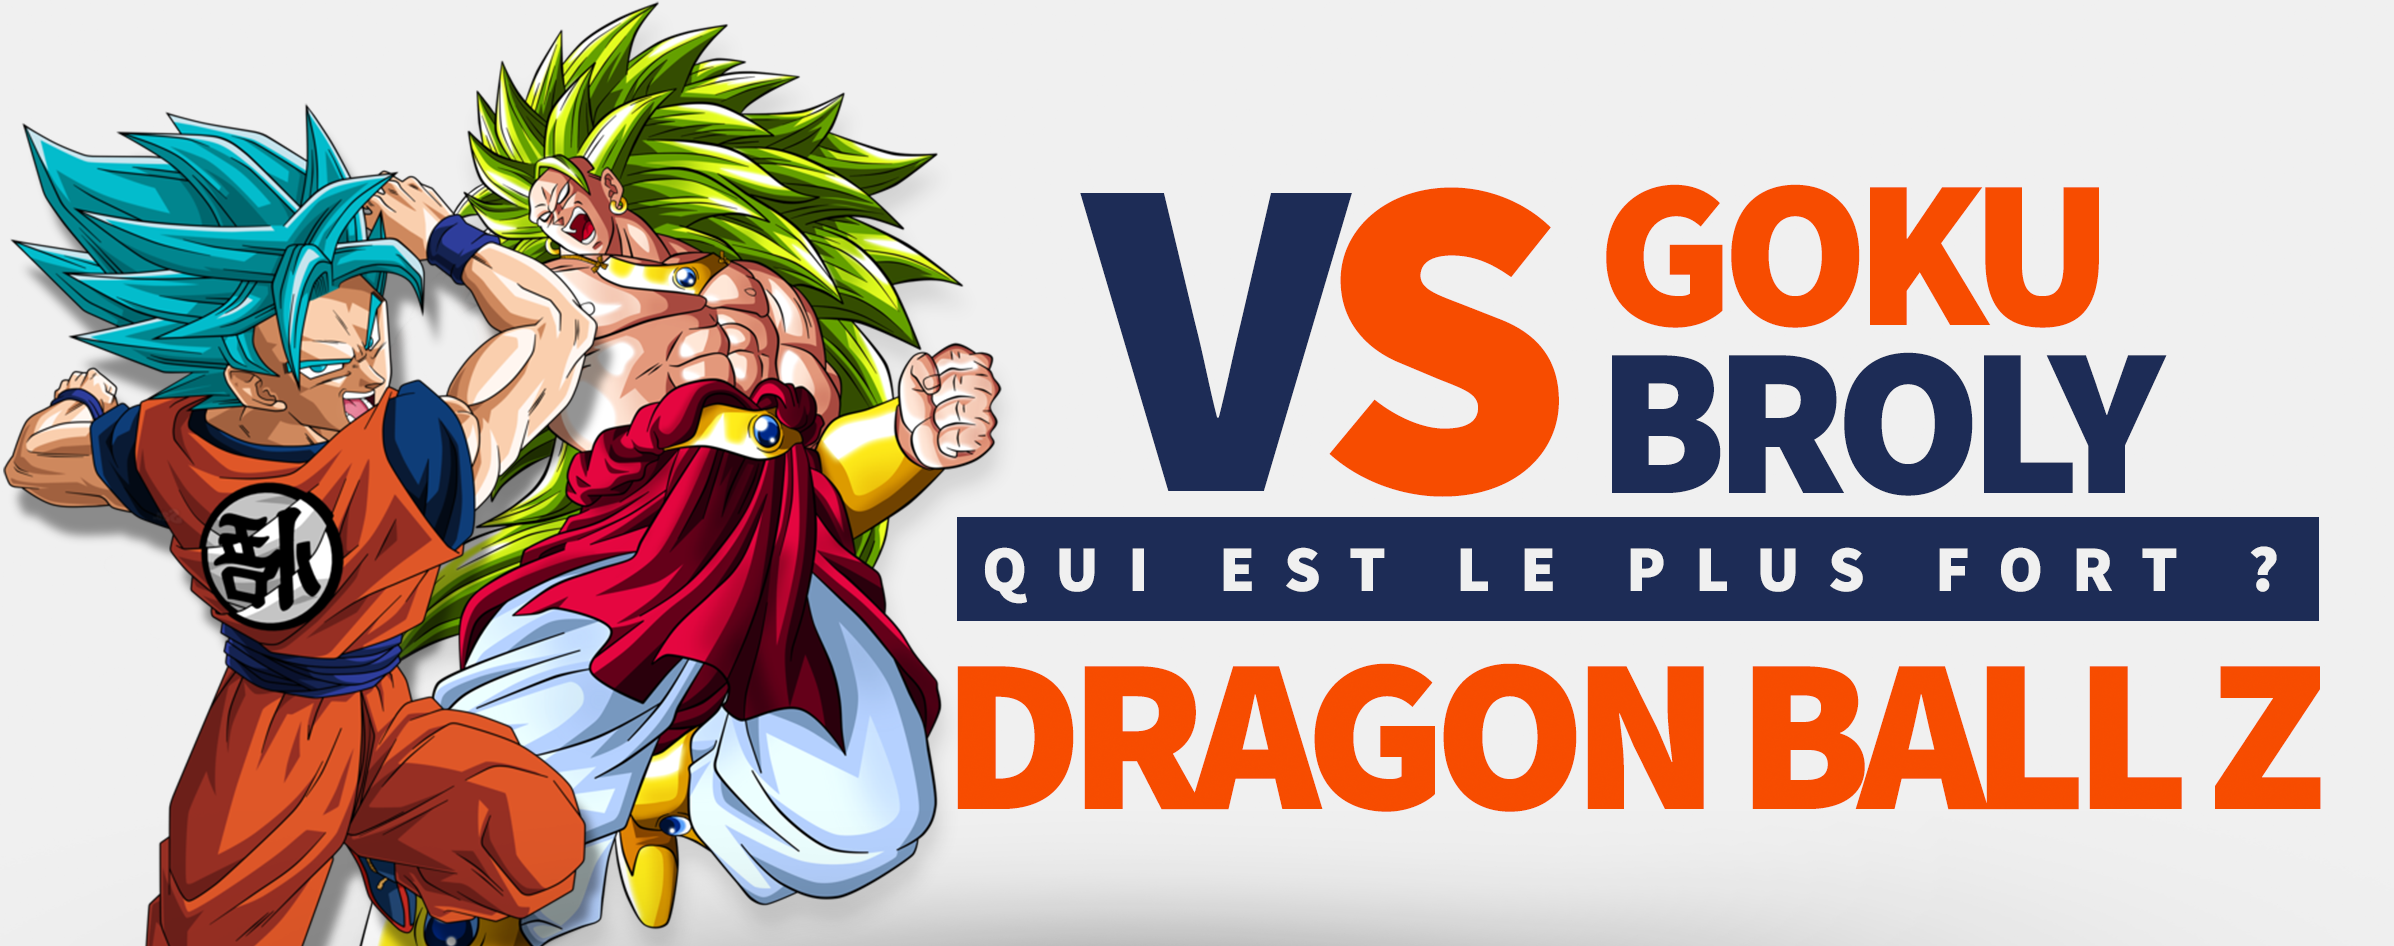 Goku vs Broly : Qui Gagne ? | Goku Shop